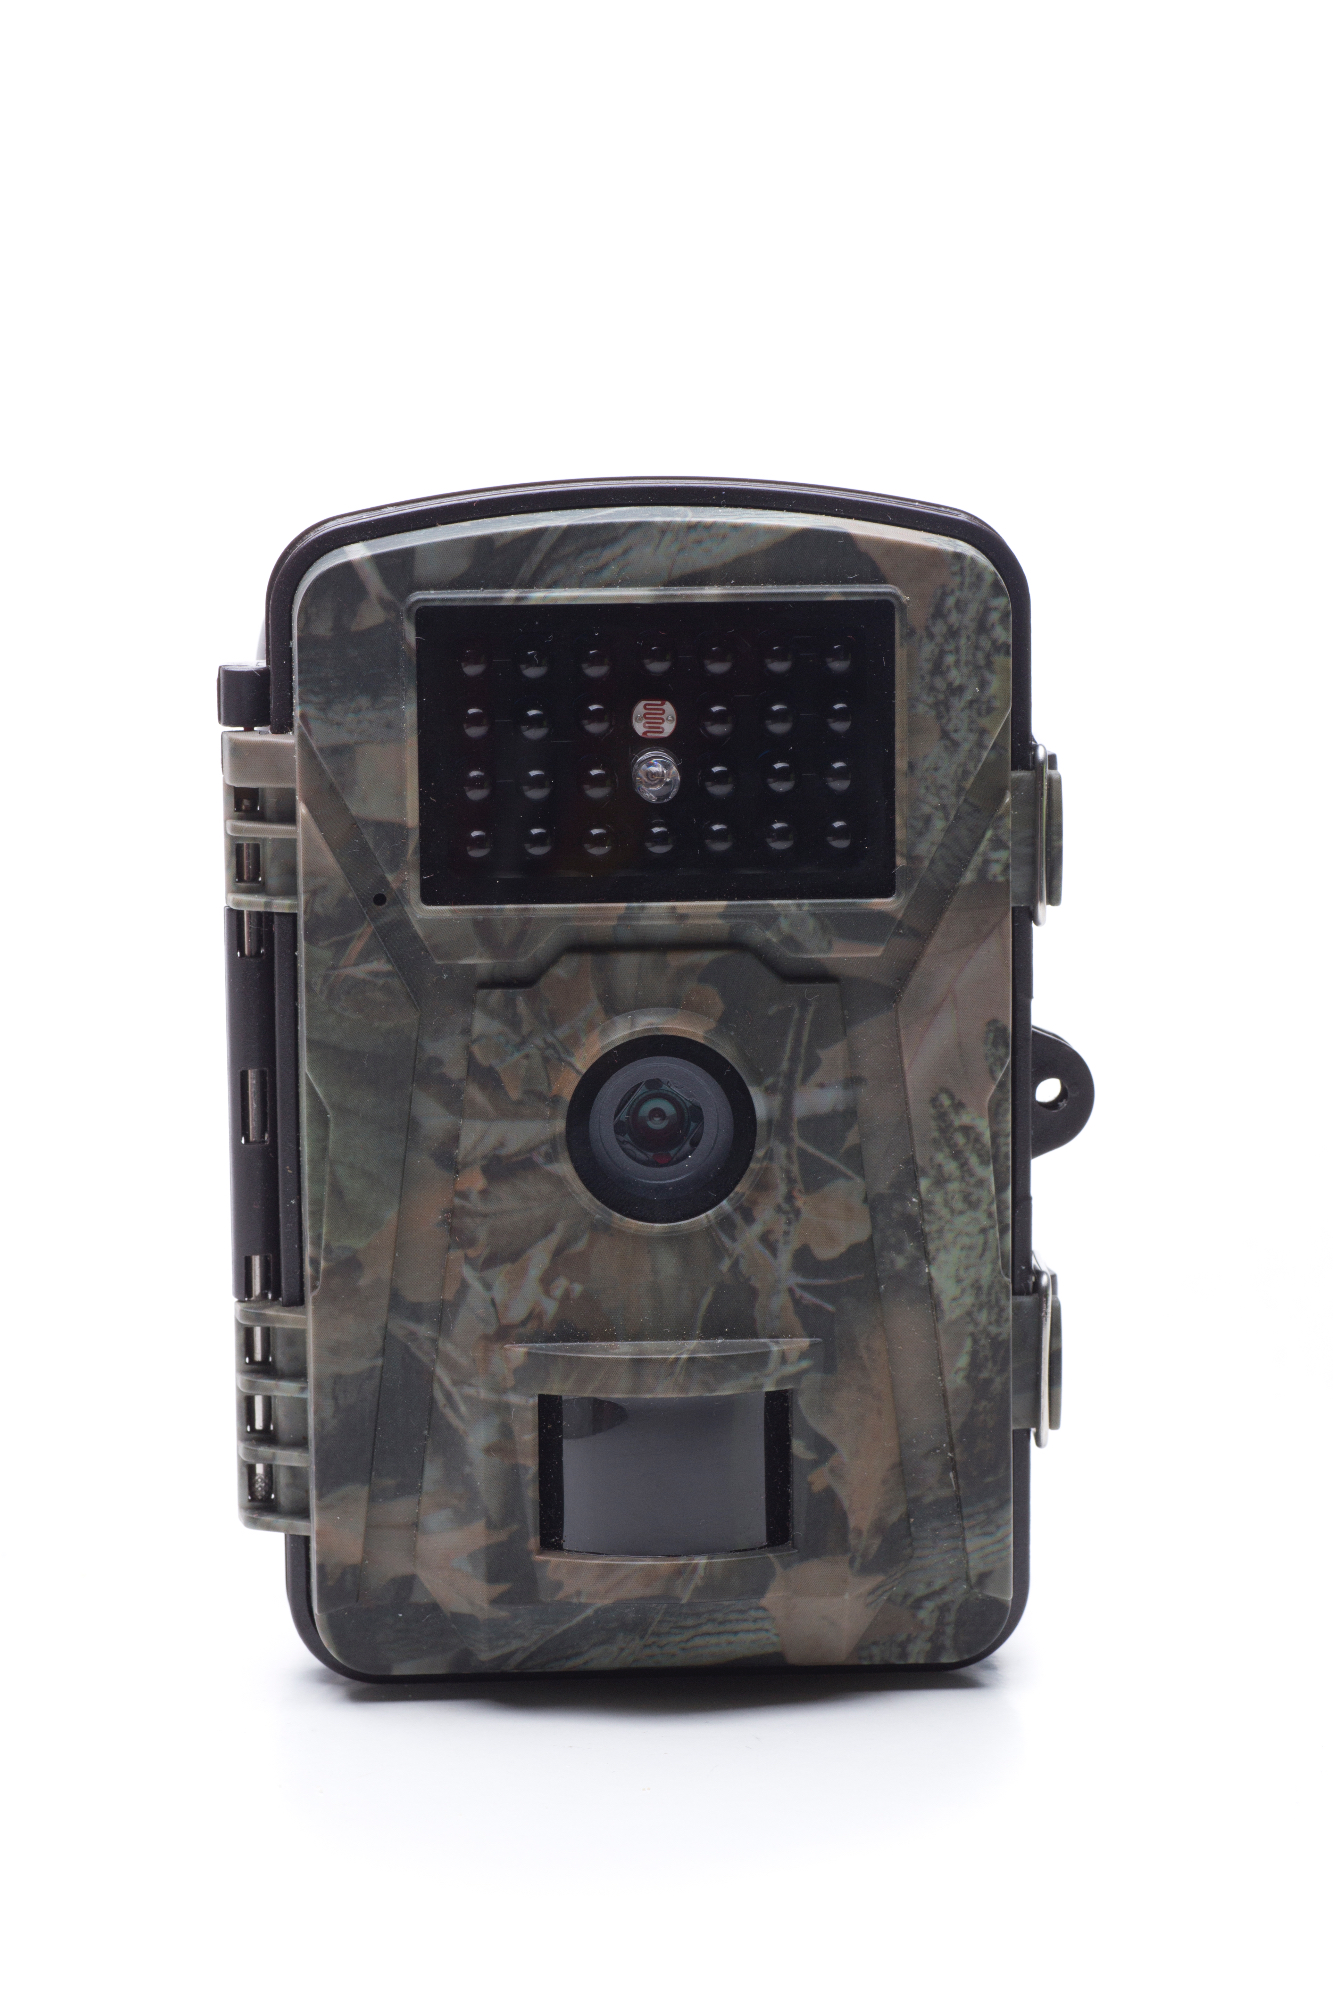 Lovska kamera je zelo uporaben lovski pripomoček